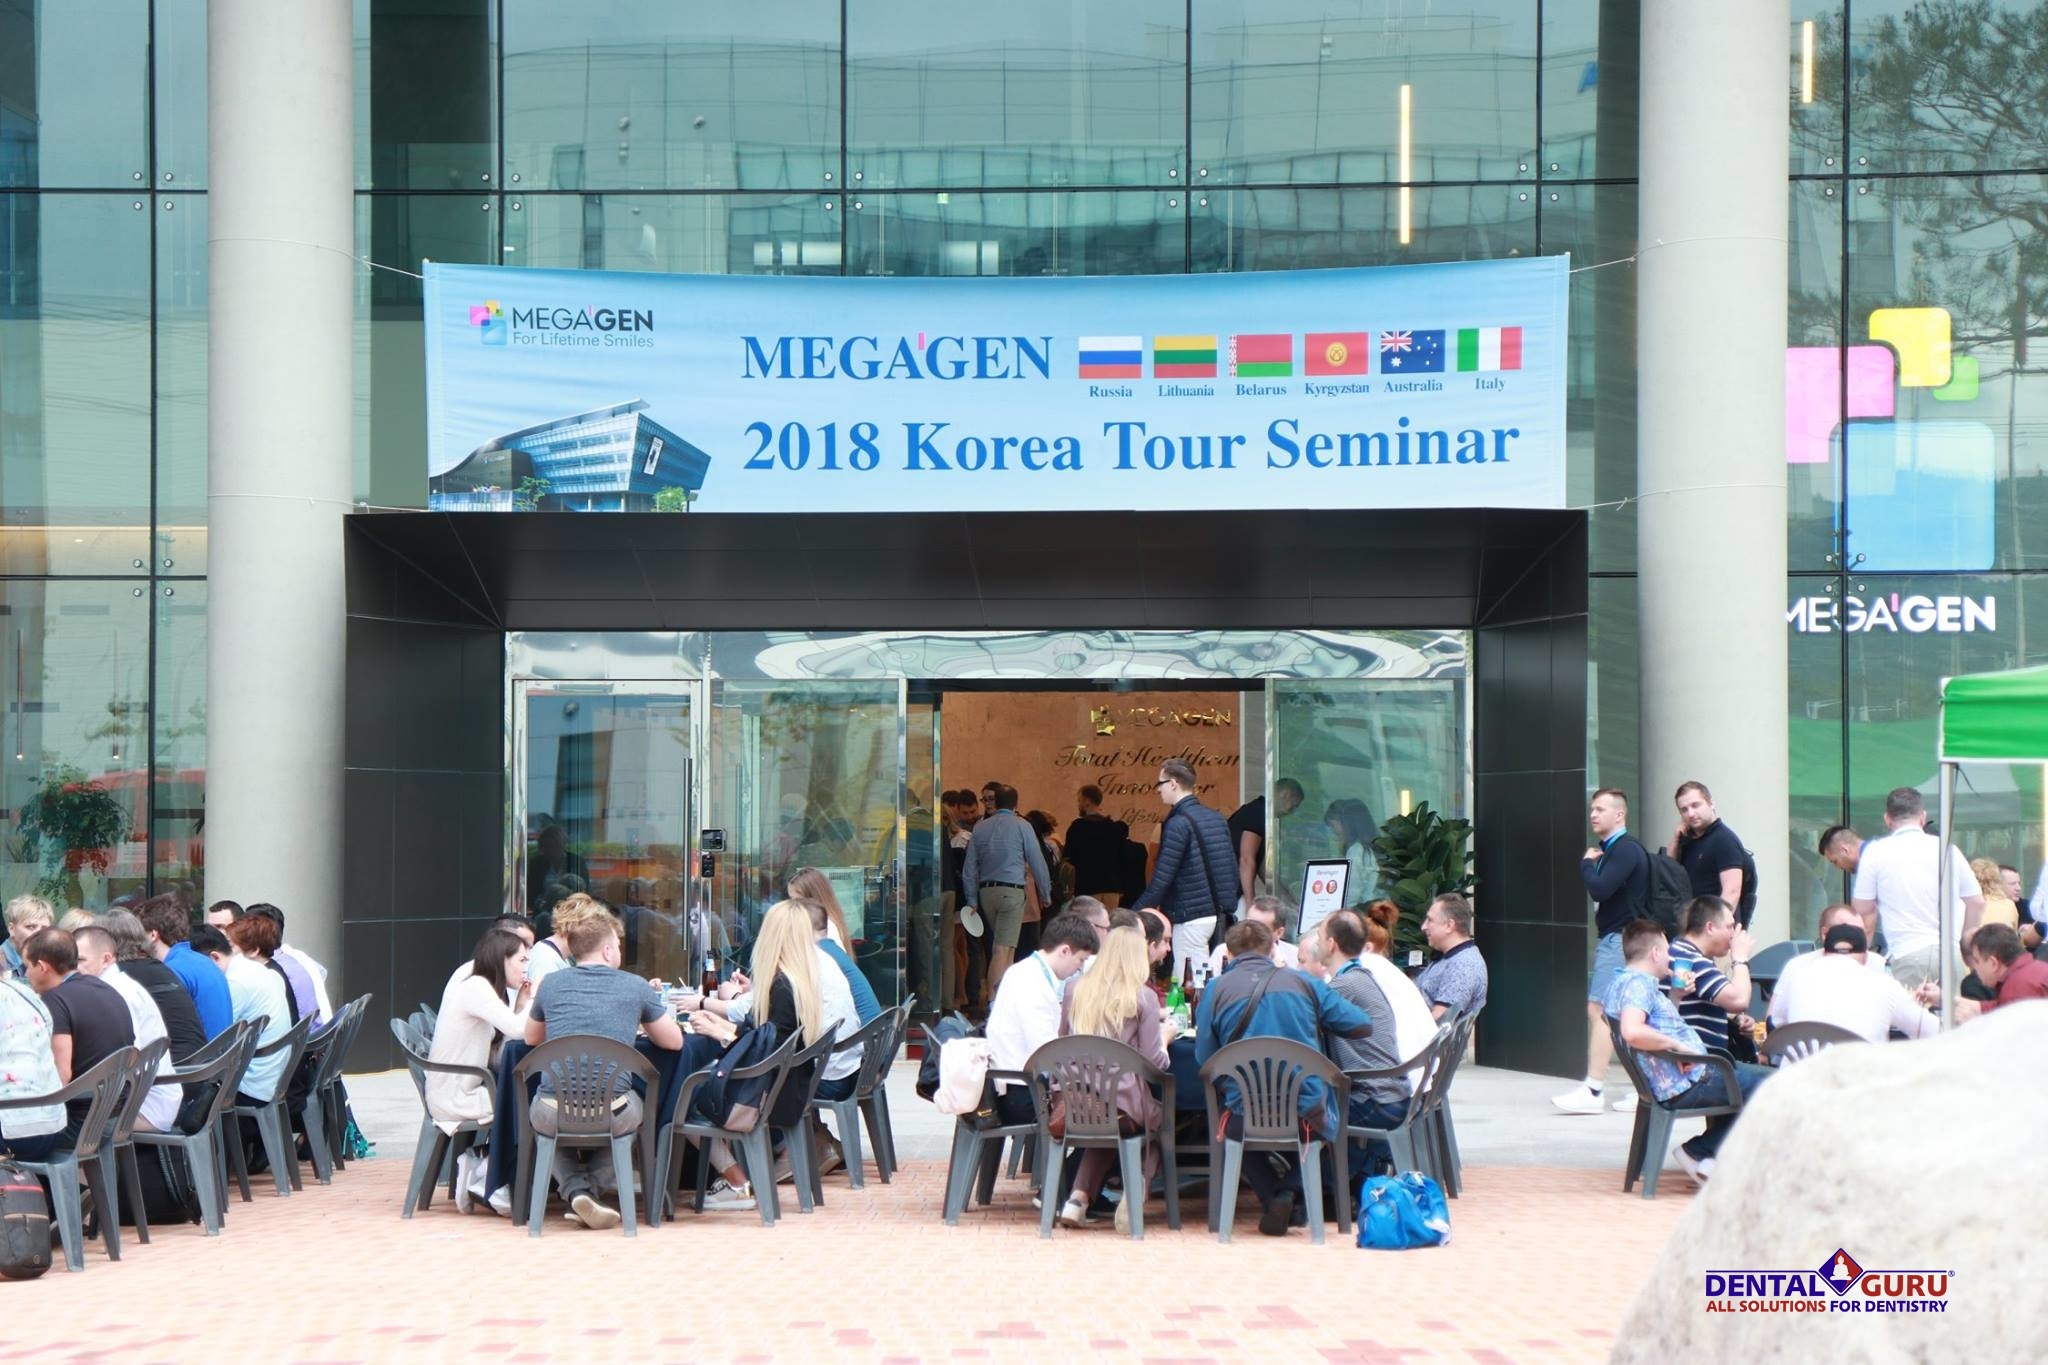 MegaGen Korea Tour Seminar с участием представителей MegaGen из компании Дентал Гуру-55 (16).jpg